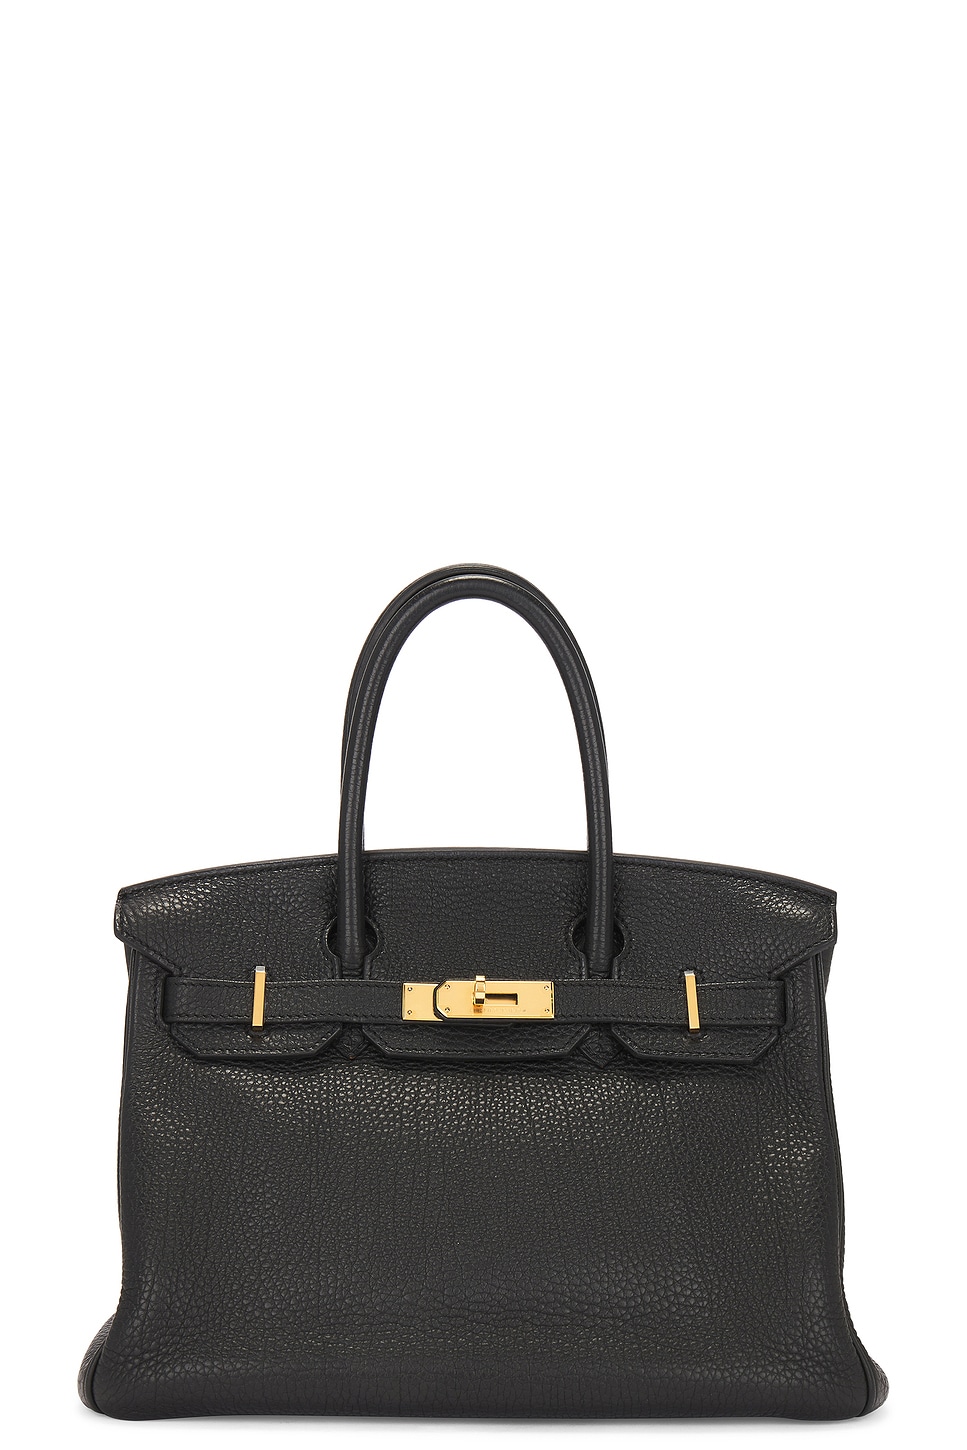 Pre-owned Hermes Togo Birkin 30 Handbag In Black